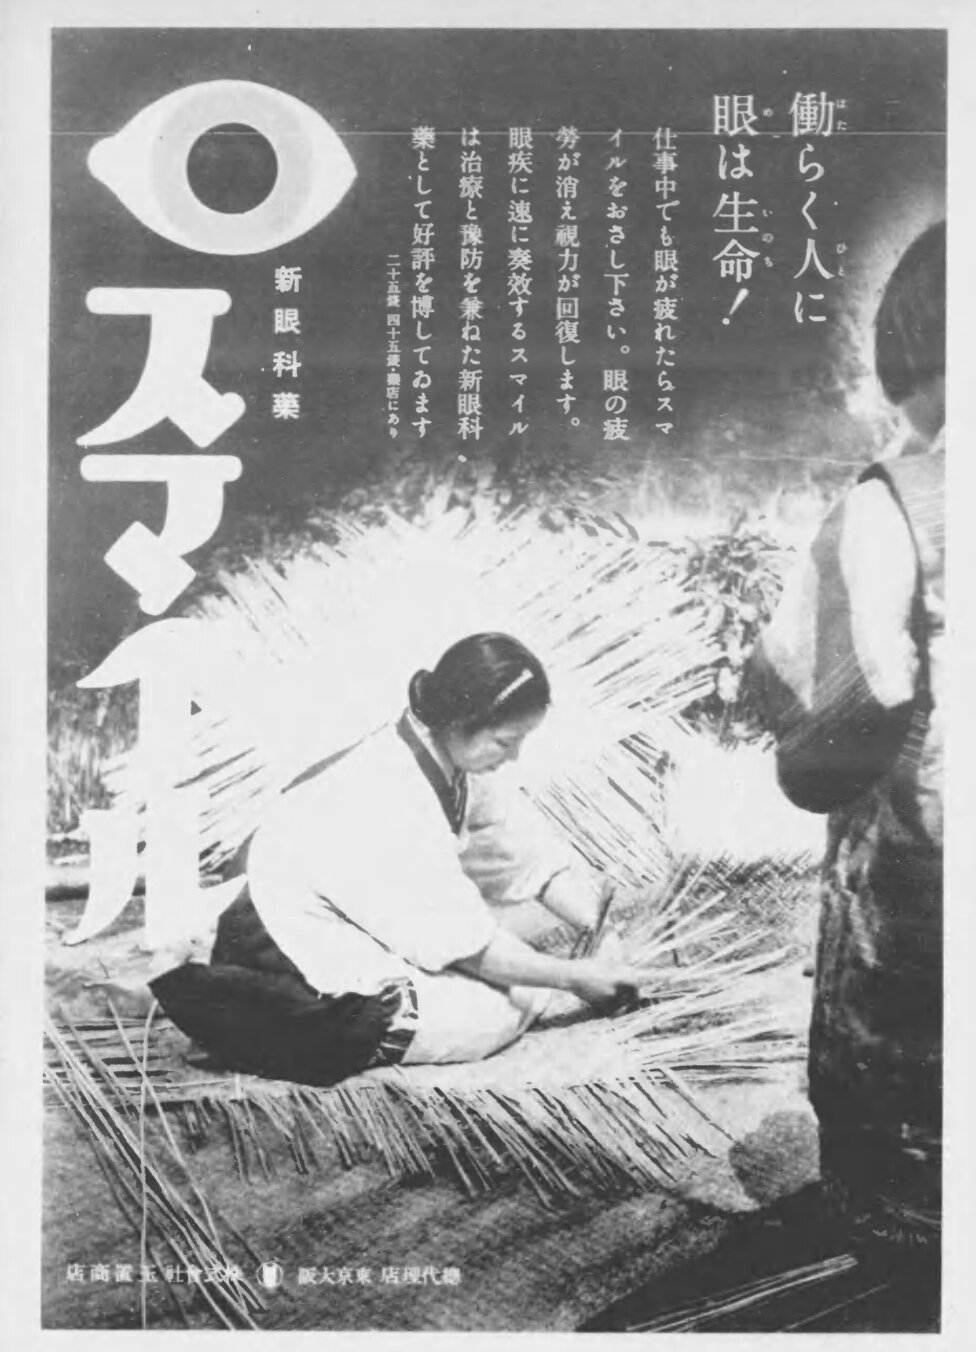 昭和15年11月6日『写真週報』の広告欄